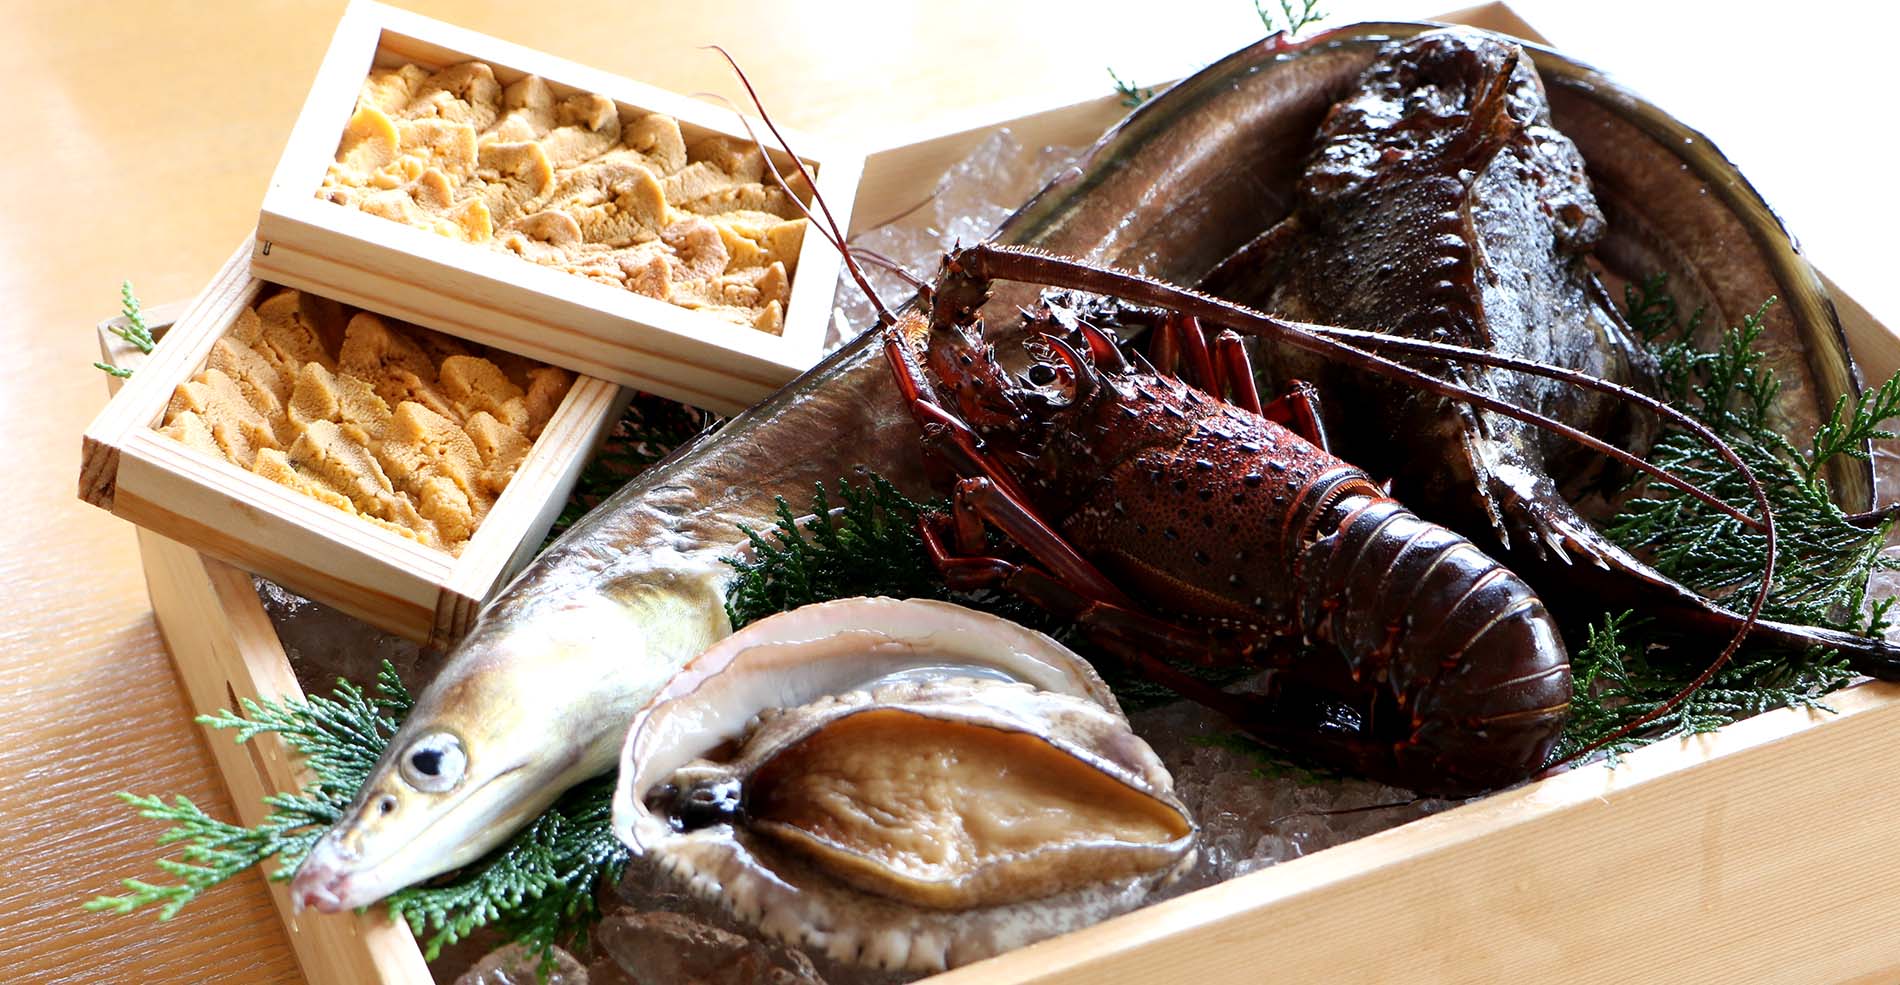 淡路島の秋を彩る旬食材の饗宴「秋の味覚フェア」のご案内